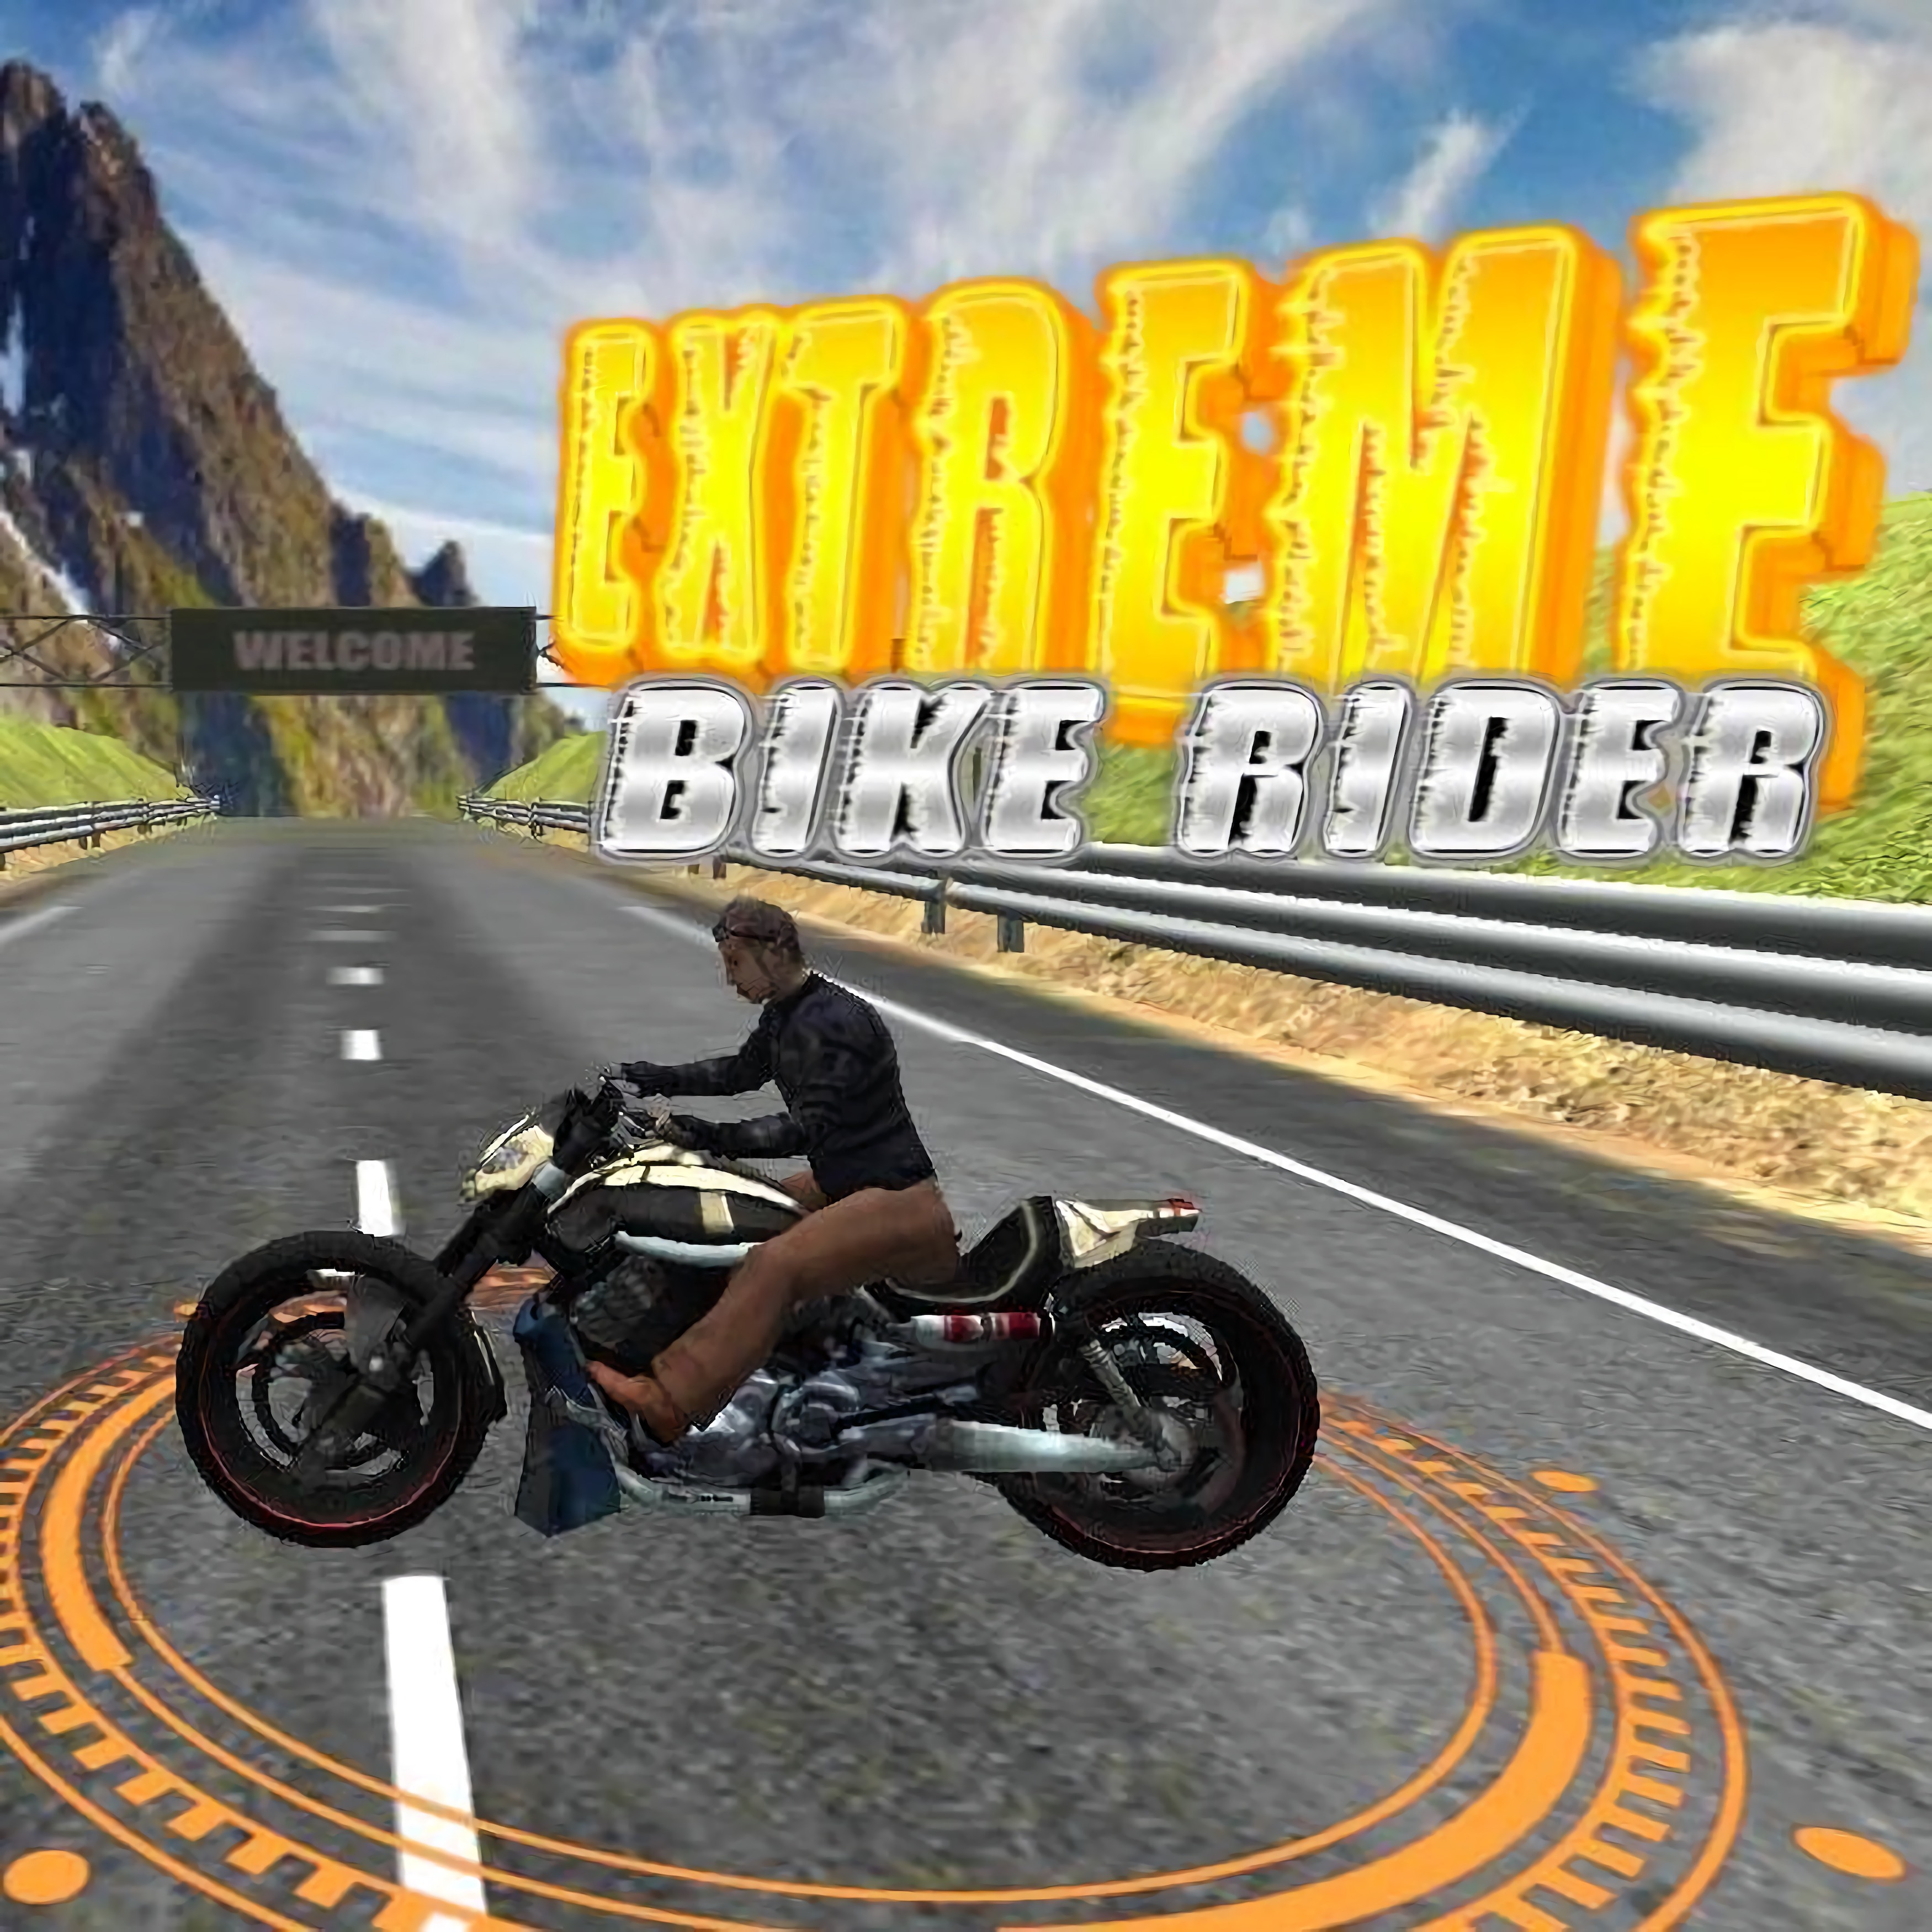 Extreme Bike Rider